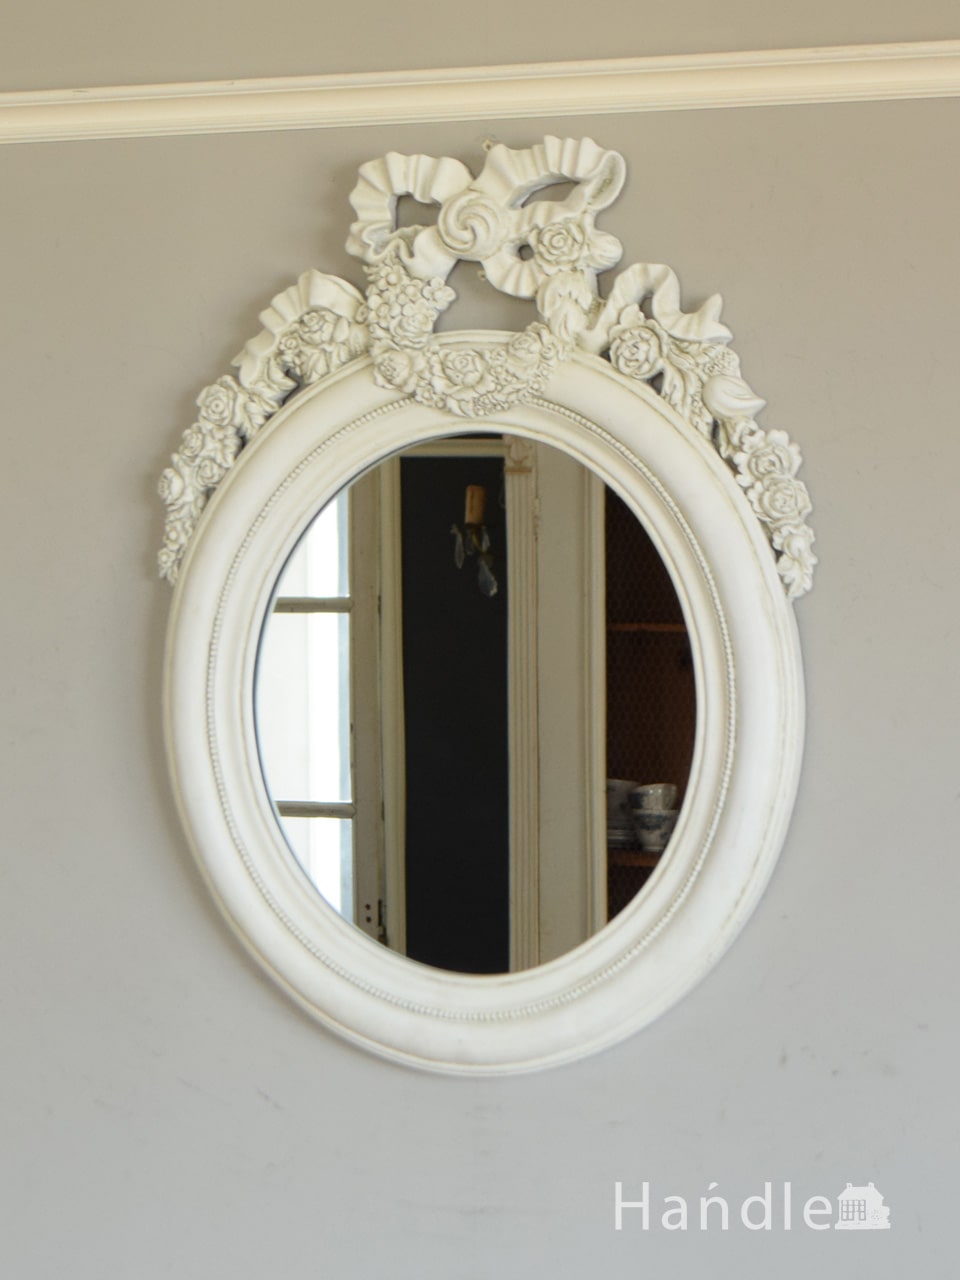 アンティーク調のおしゃれな鏡、大きなリボン付きのウォールミラー  (n21-059)